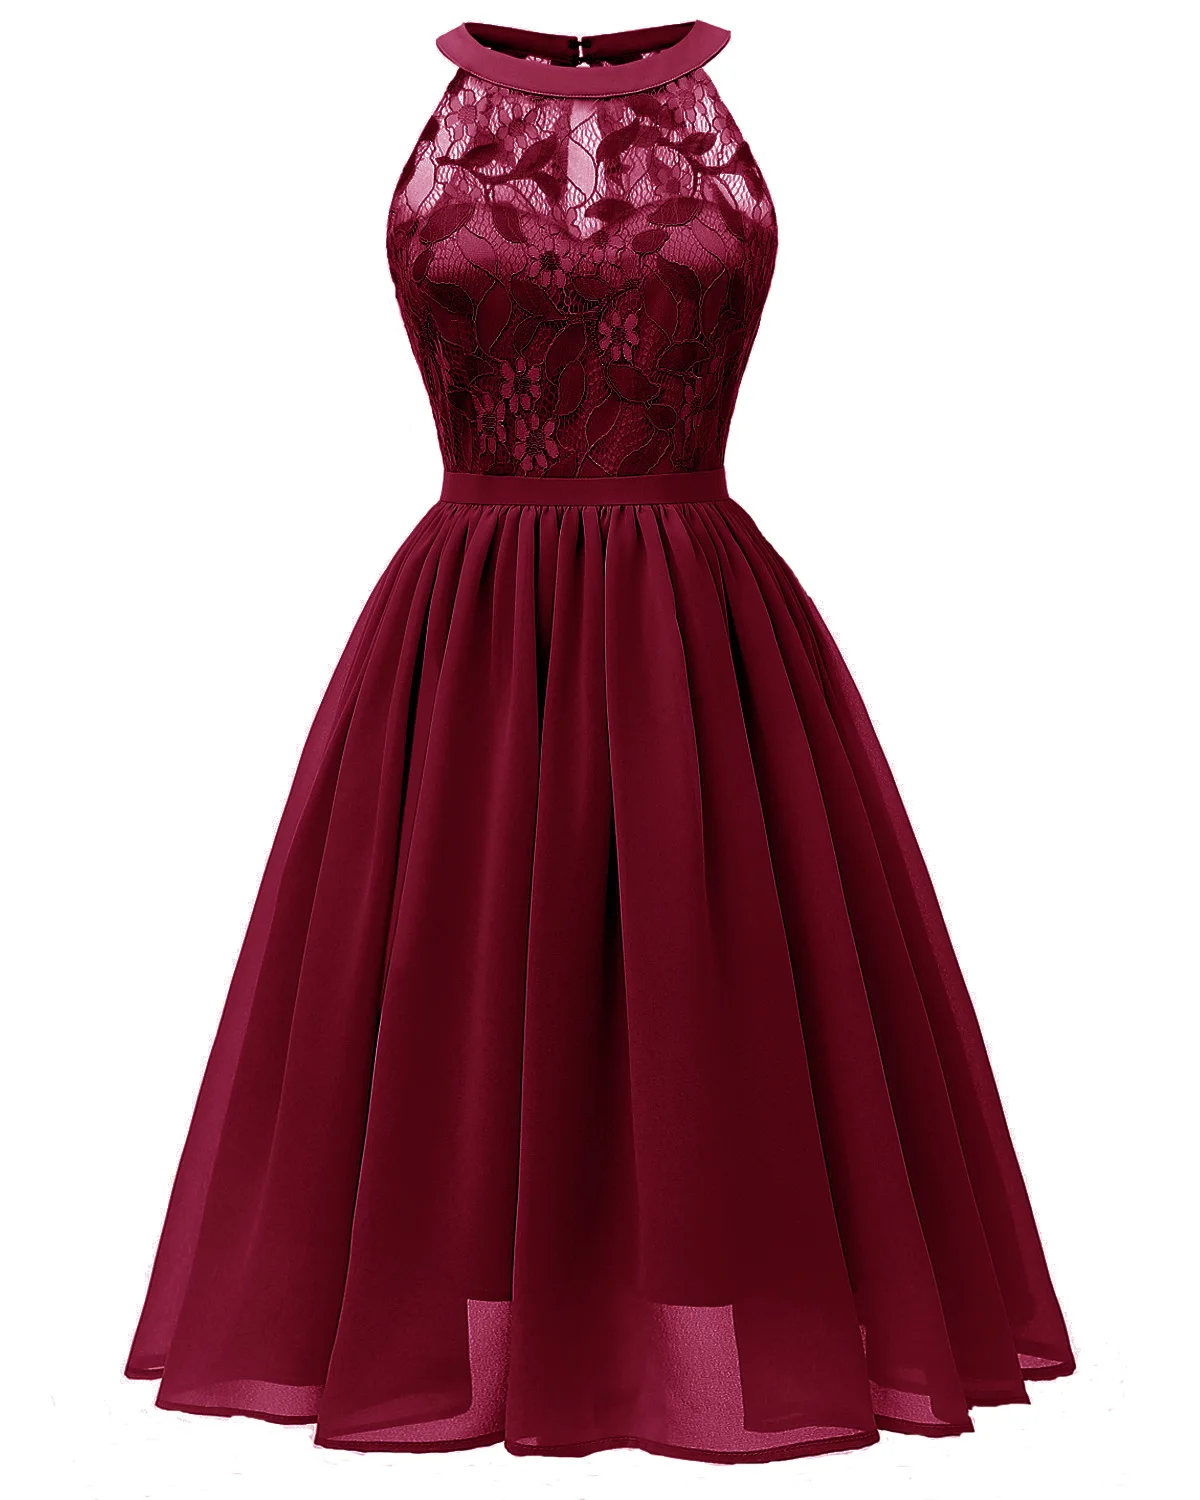 Robe Femme Ete Rouge, женское винтажное кружевное коктейльное платье принцессы с цветочным рисунком и декольте, вечерние платья, элегантное платье - Цвет: Бургундия